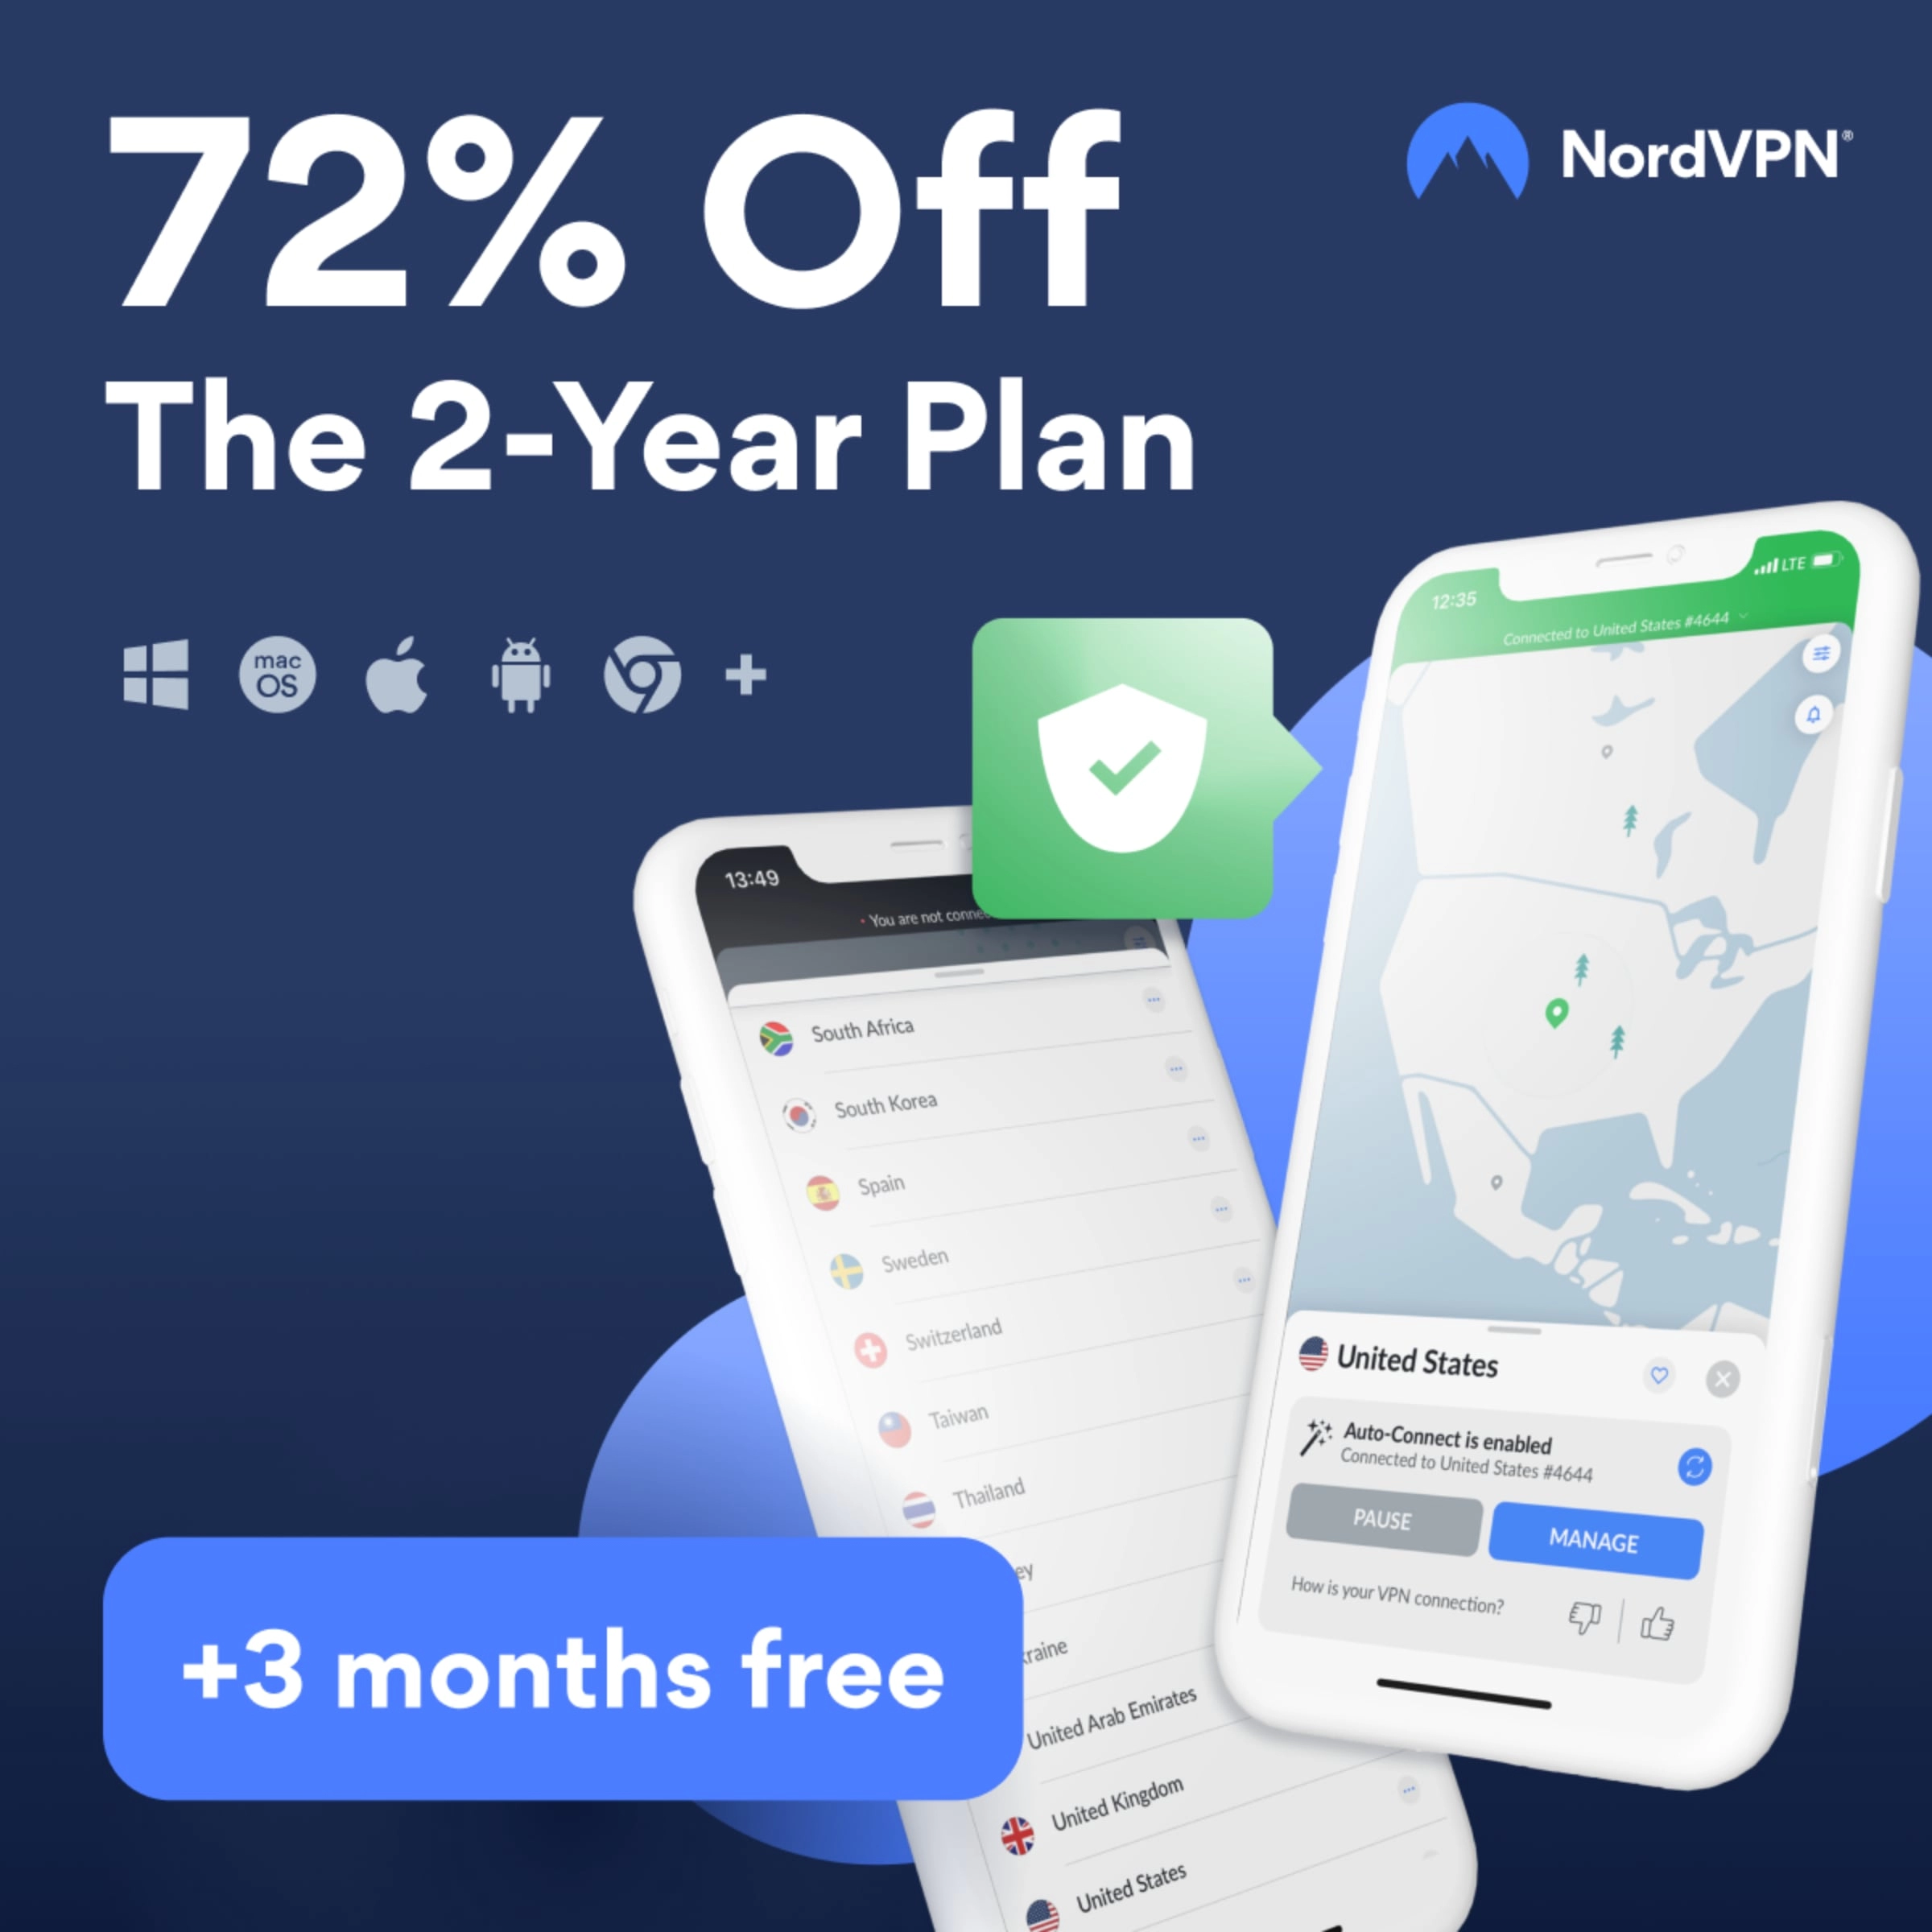 NordVPN-tilbud - 72% AVSLAG + 3 måneder gratis